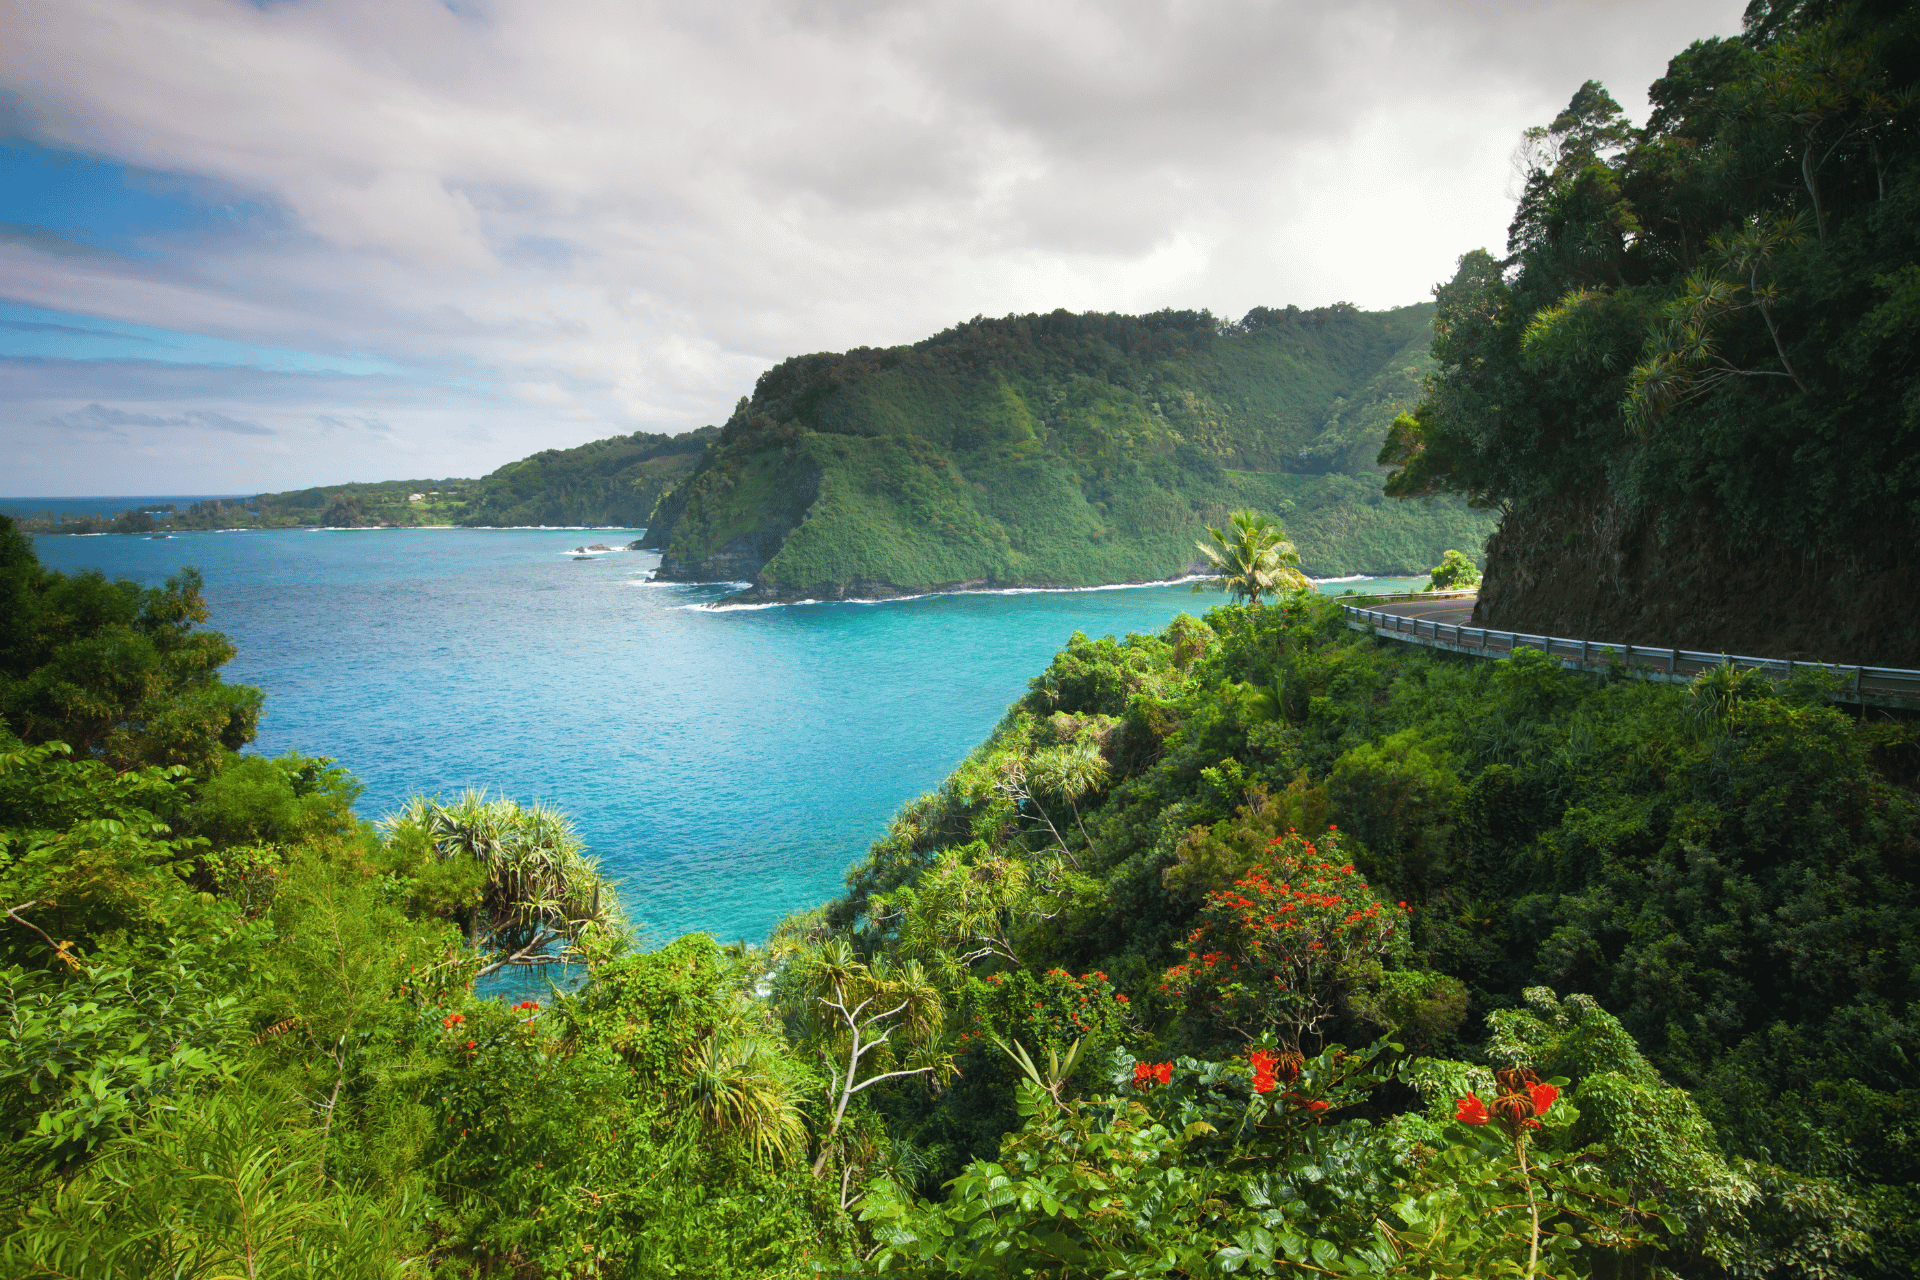 The island of Hawaii